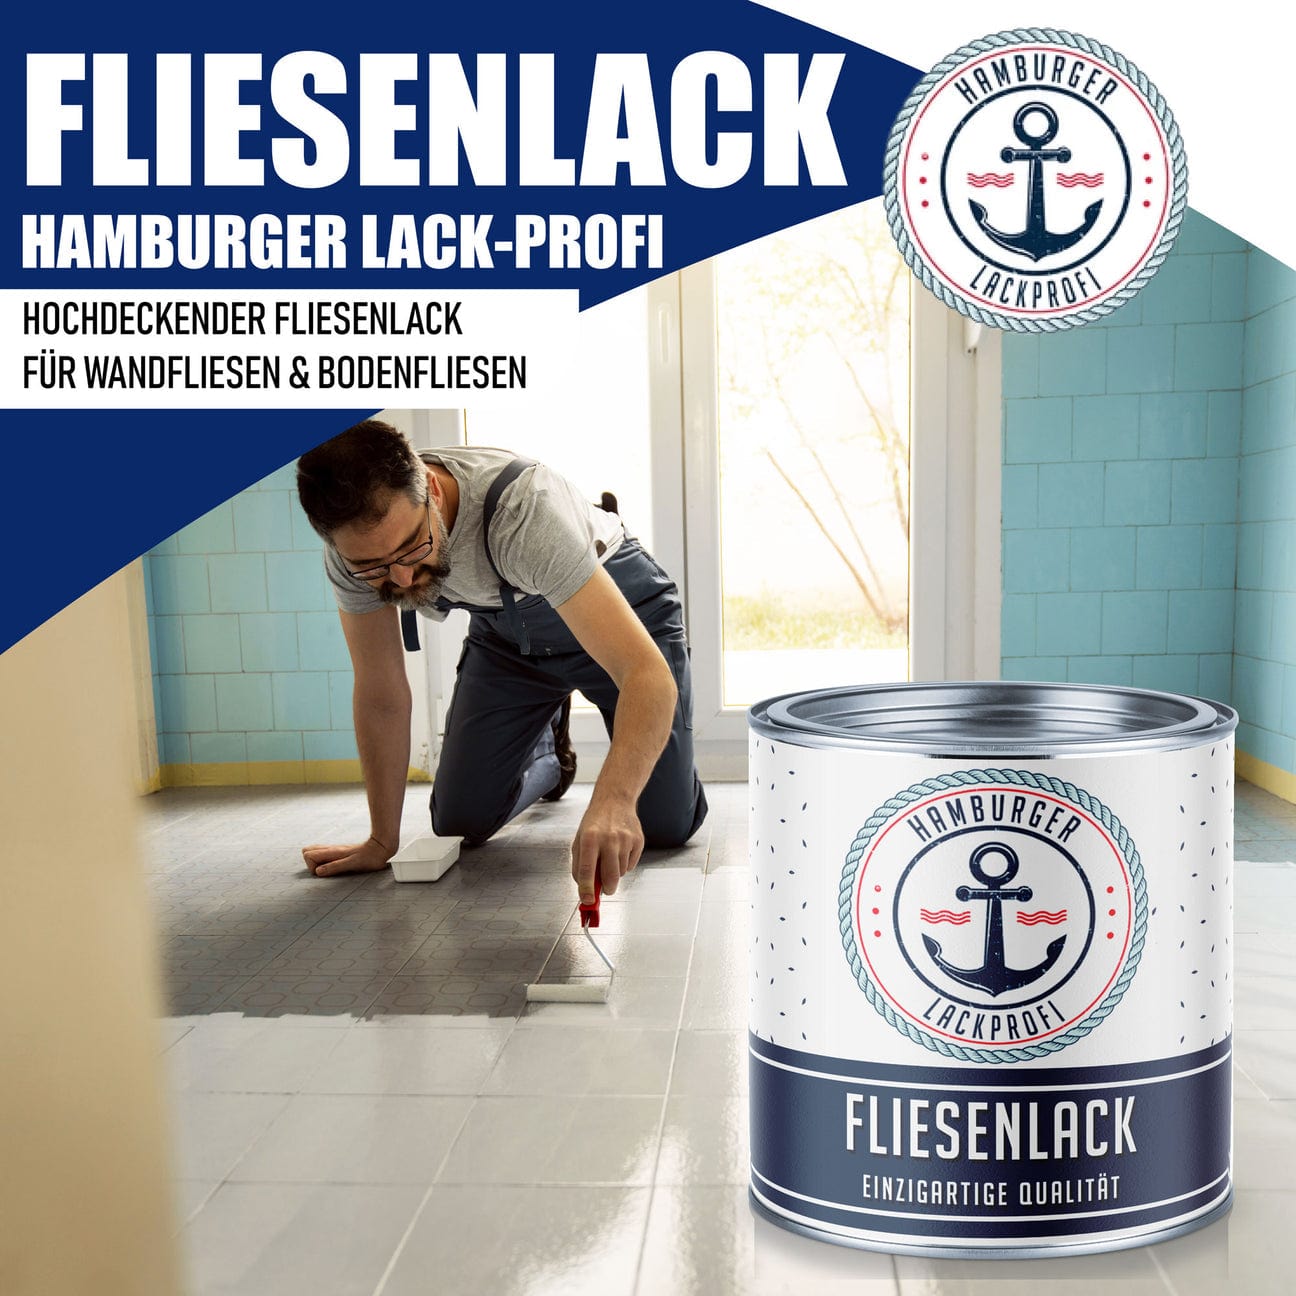 Hamburger Lack-Profi Hamburger Lack-Profi Fliesenlack Weißgrün RAL 6019- hochdeckende Fliesenfarbe Grün